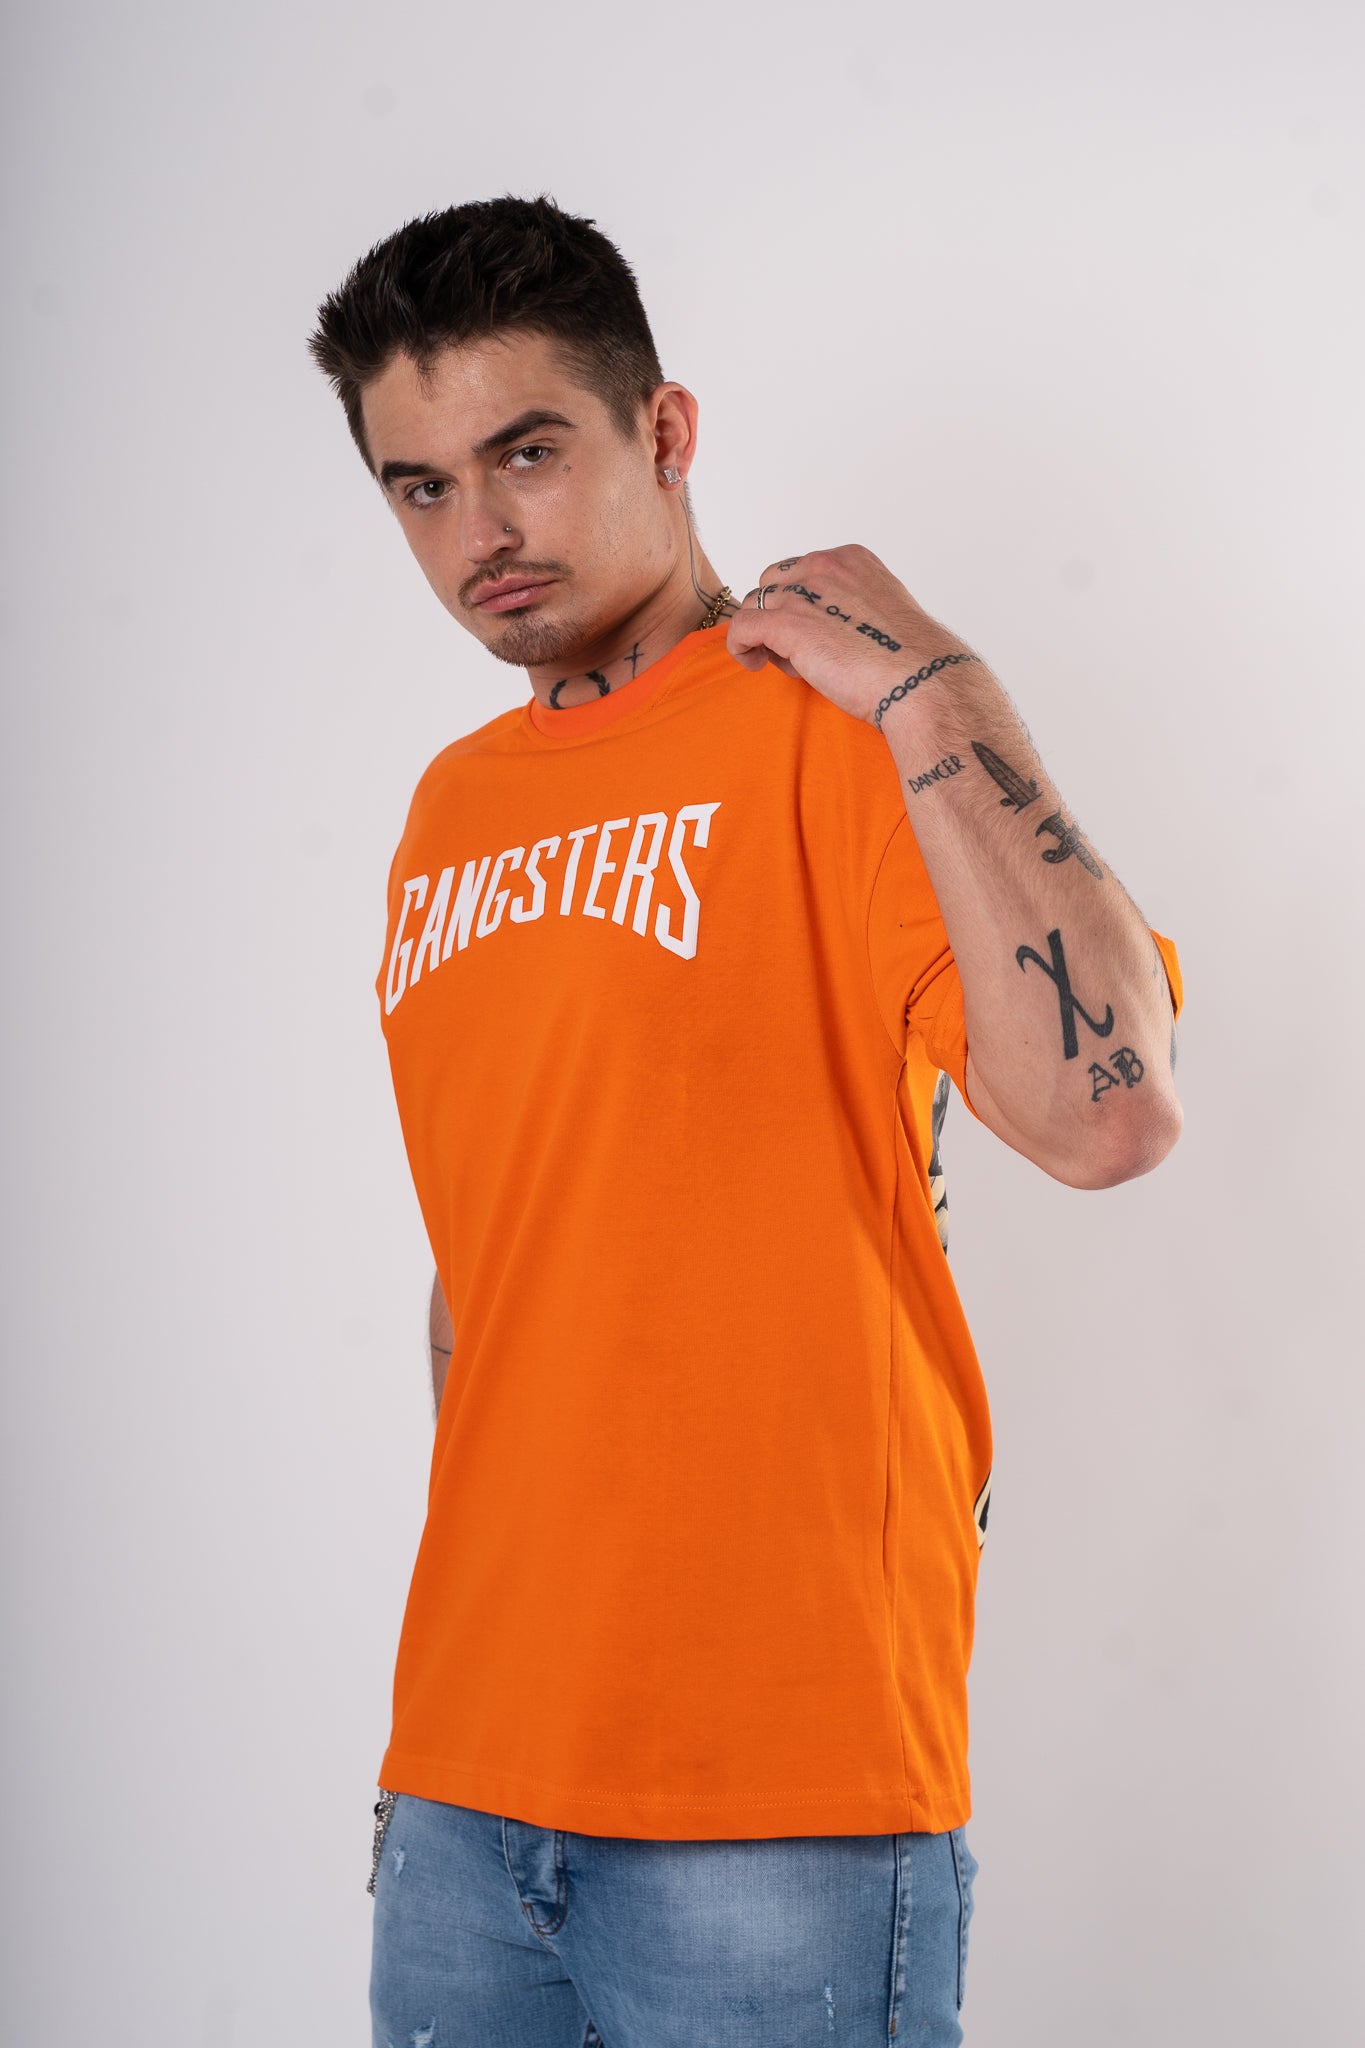 Koszulka Oversize "Gangsters" - pomarańczowa